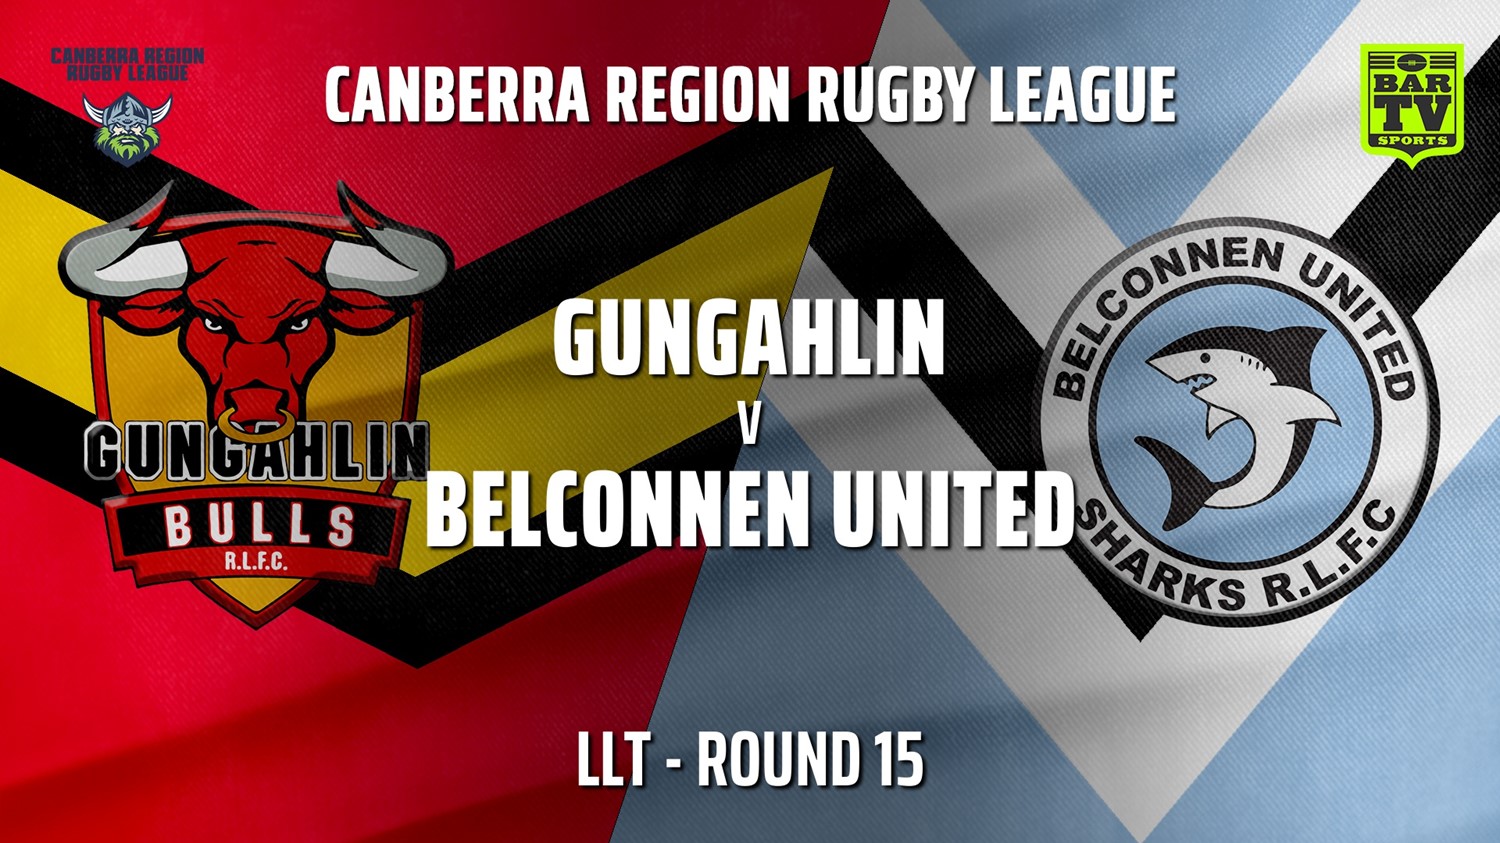 210807-Canberra Round 15 - LLT - Gungahlin Bulls v Belconnen United Sharks Slate Image